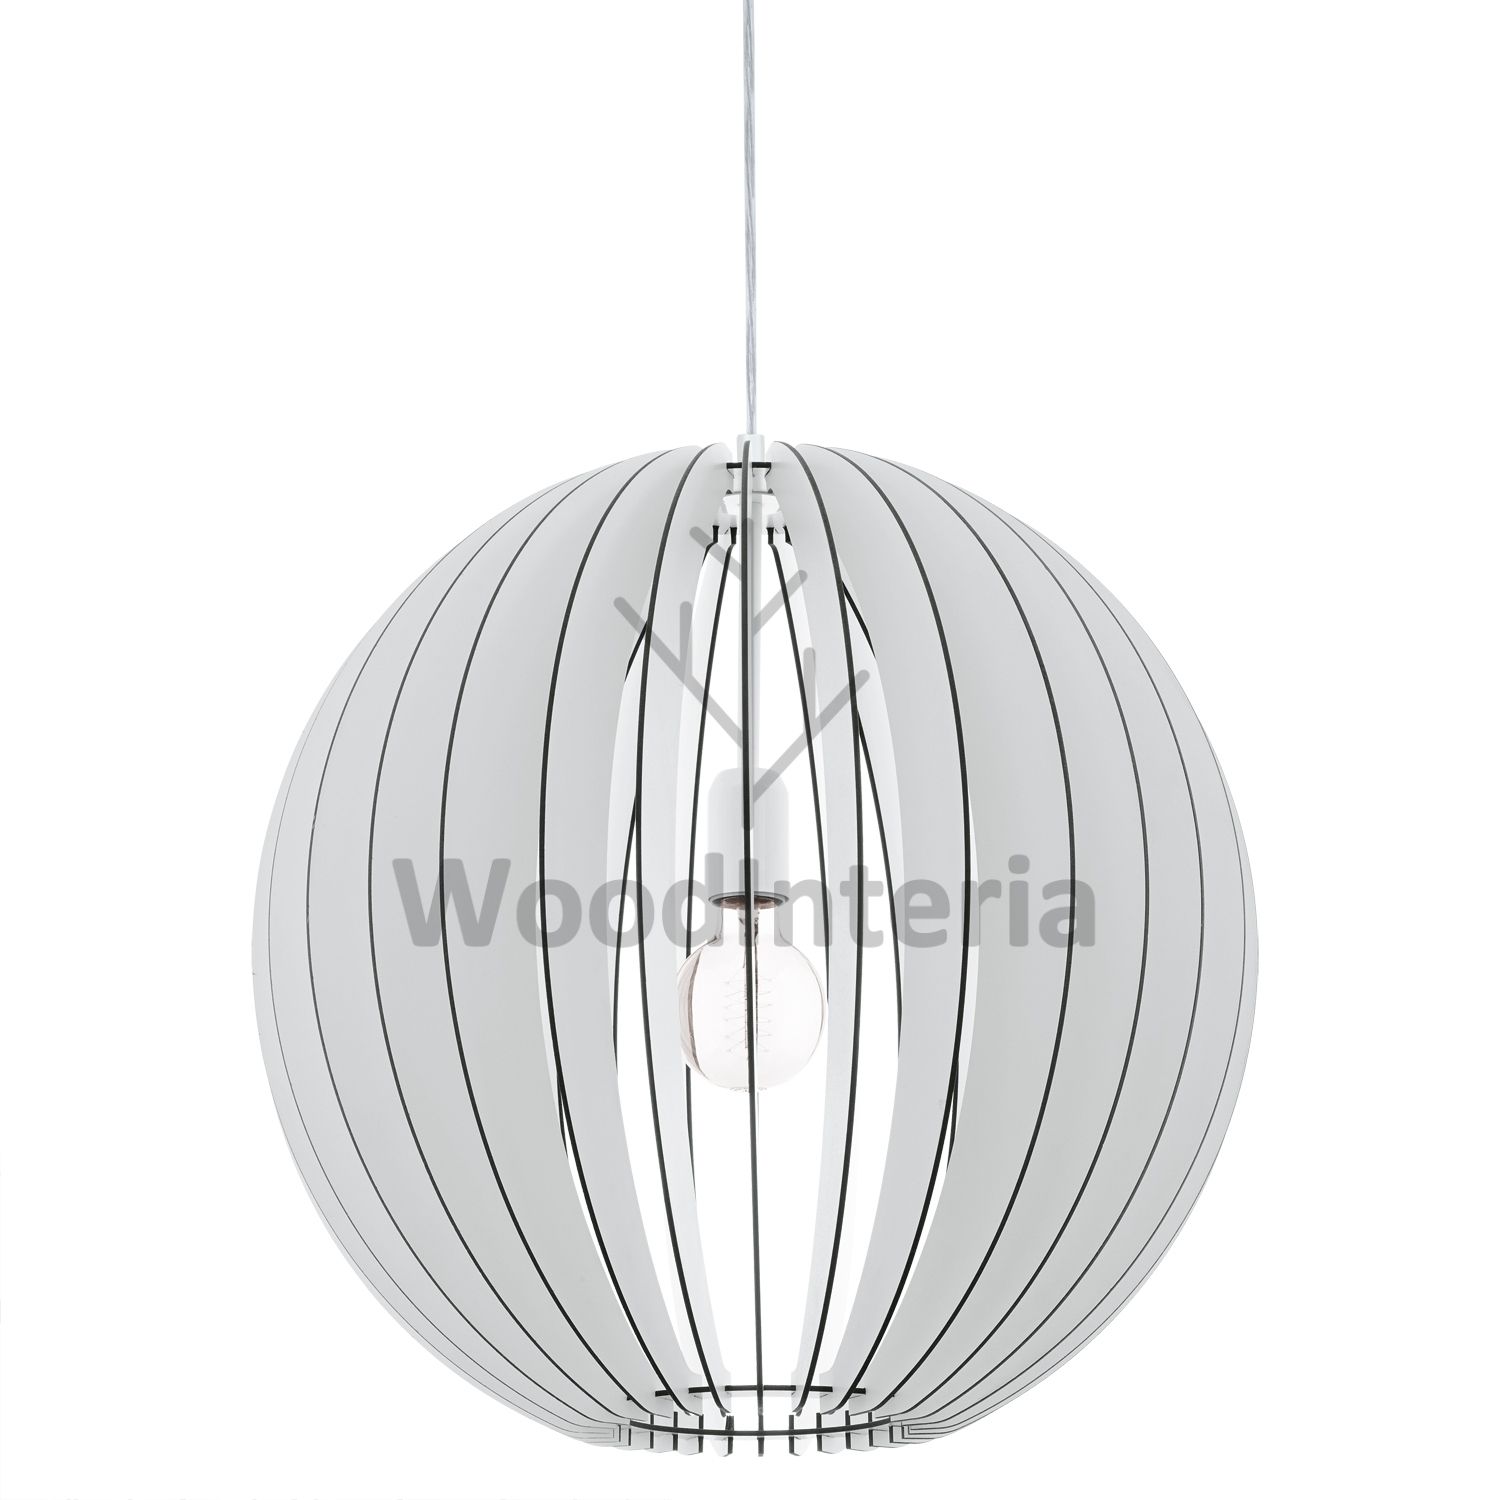 фото подвесной светильник section sphere white в скандинавском интерьере лофт эко | WoodInteria